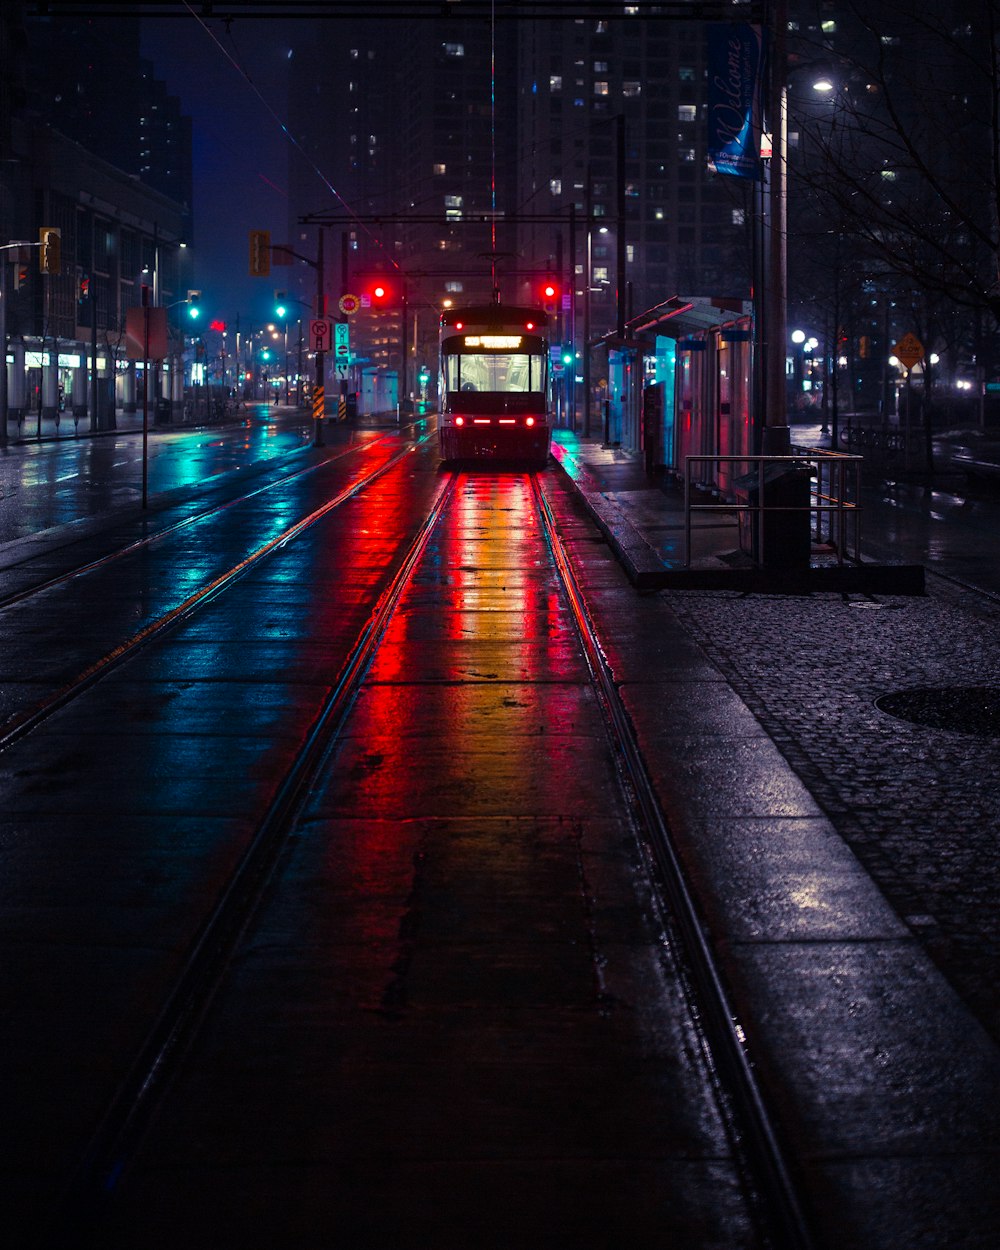 photo du tram à côté de la station d'attente pendant la nuit